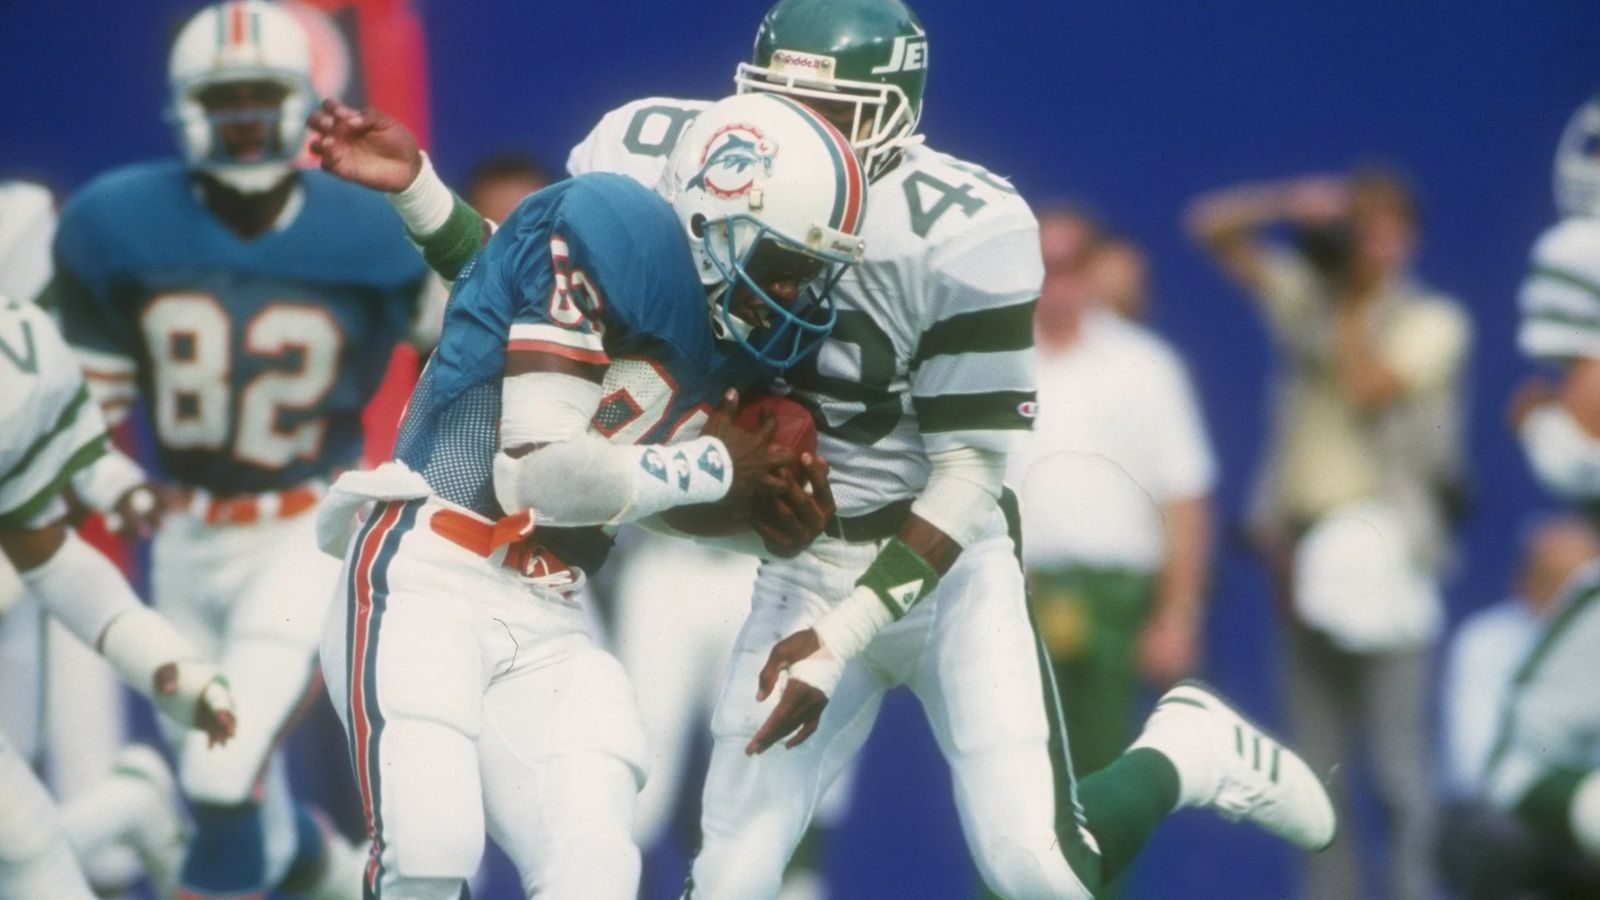 
                <strong>Platz 9 (geteilt): Miami Dolphins vs New York Jets 45:51 (OT)</strong><br>
                Mit 96 Punkten endet der Showdown 1986 in der AFC East zwischen den Dolphins und den Jets. Das Spiel geht in die Overtime, in der sich die Jets mit 51:45 durchsetzen. 31 Jahre später wiederholt sich das Ergebnis in einem anderen Duell ...
              